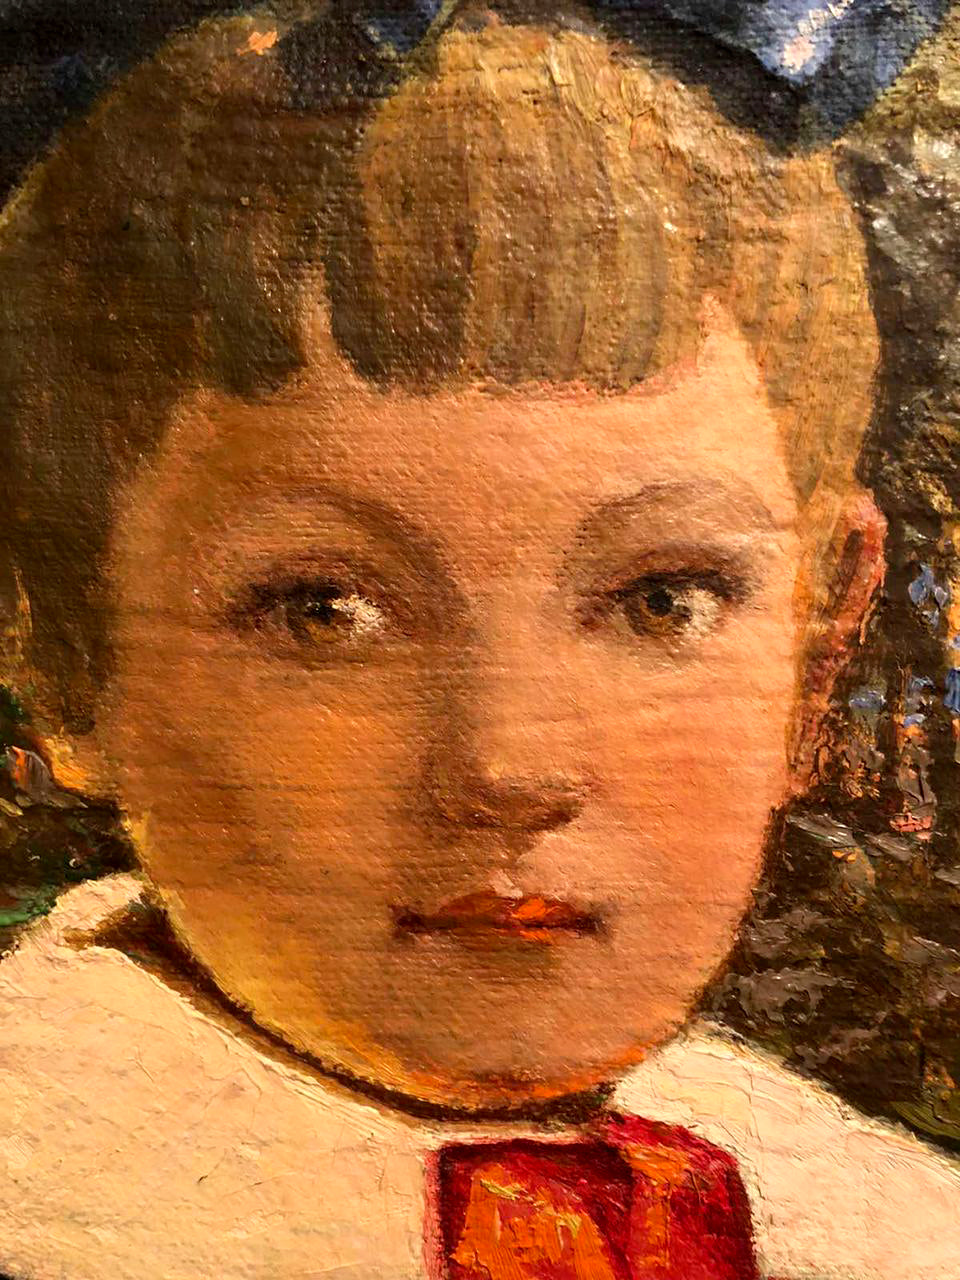 Oil painting Boy portrait